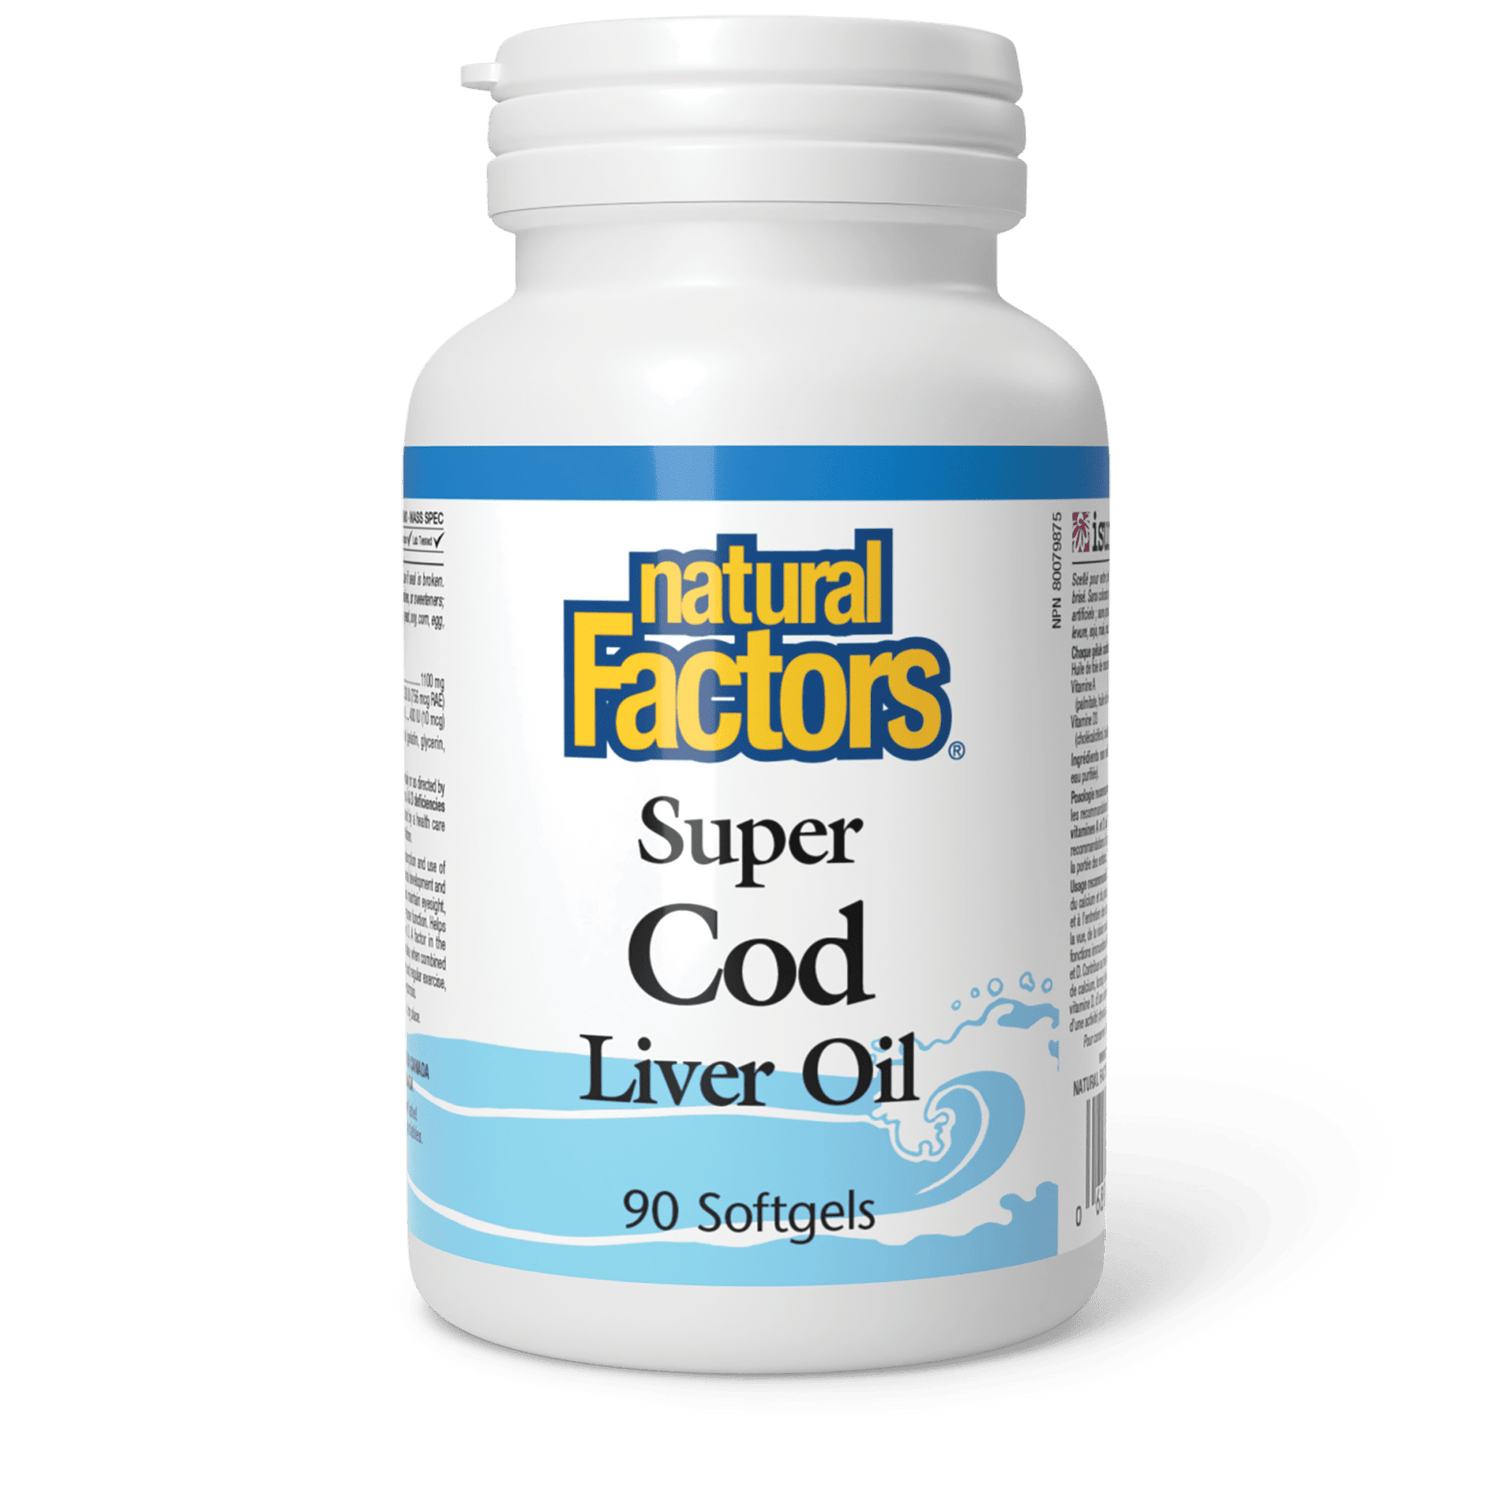 Super Cod Liver Oil, Natural Factors|v|image|1020